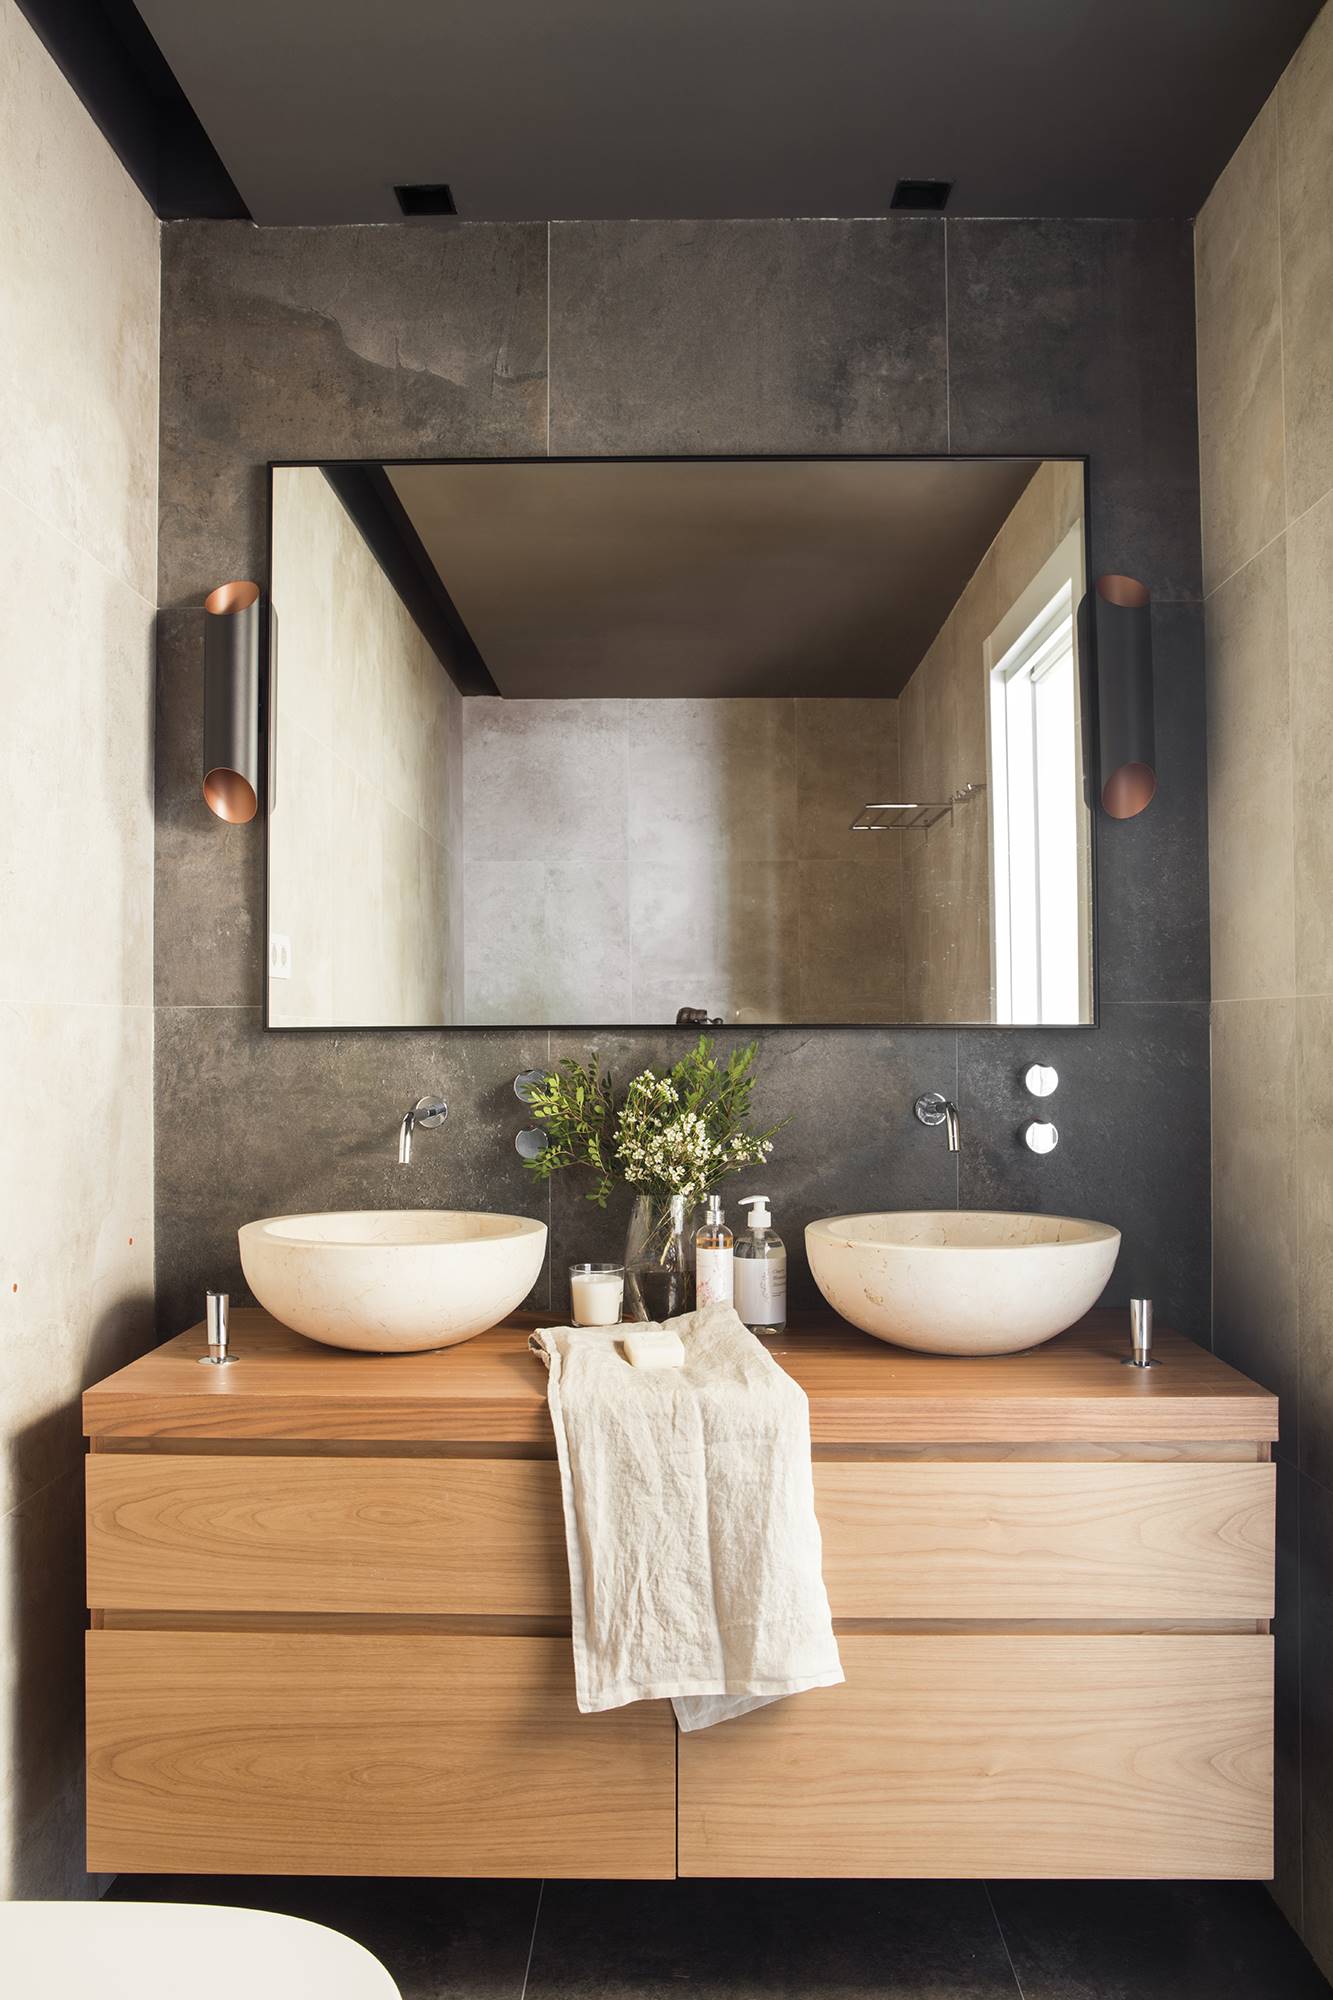 Baño con paredes de color gris y mueble volado de madera.